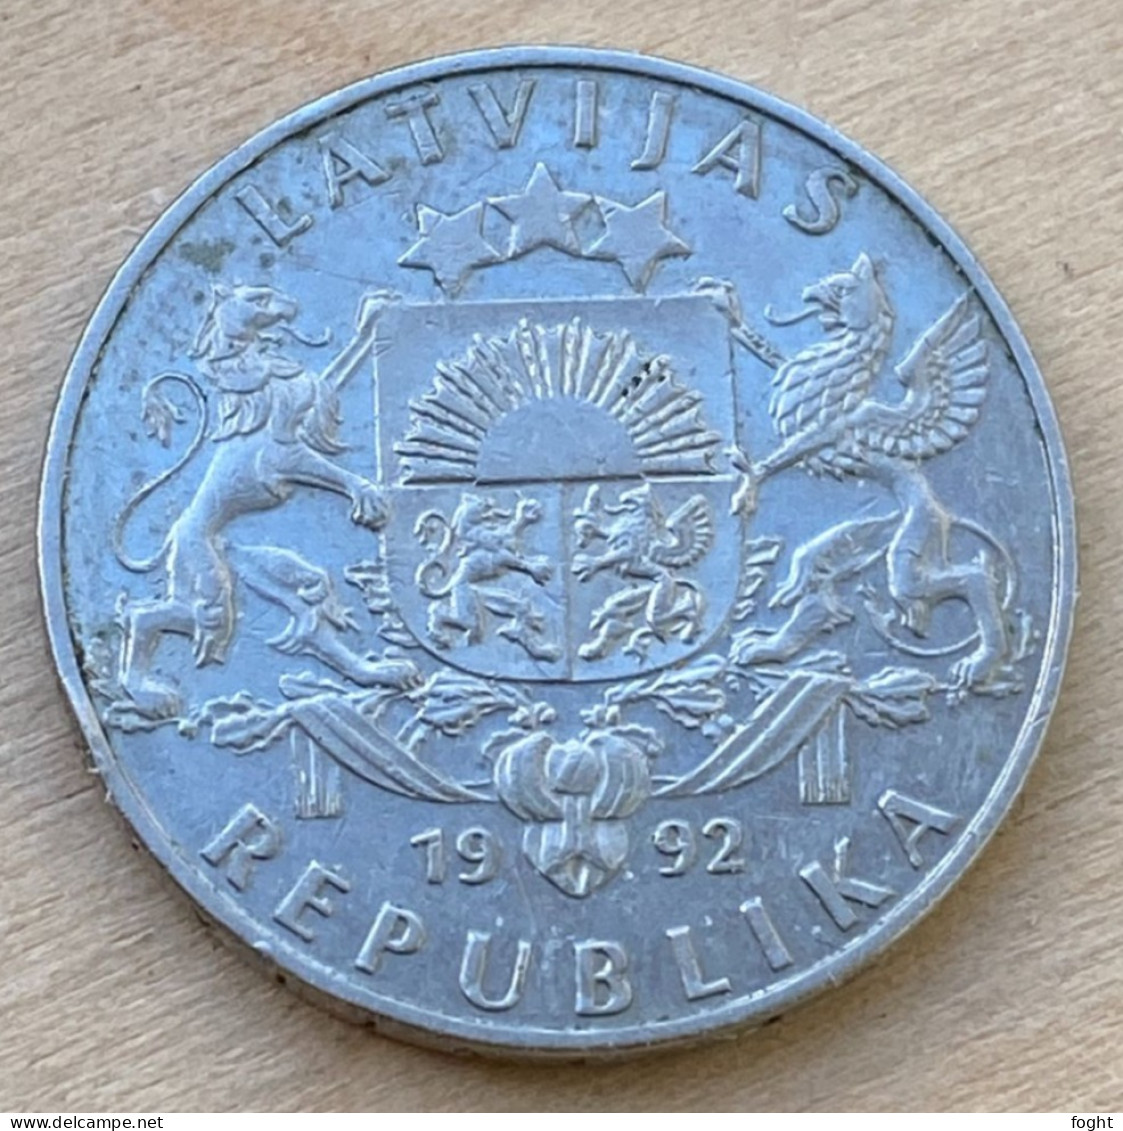 1992 Latvia Standard Coinage Coin 2 Lati,KM#12,6475 - Latvia